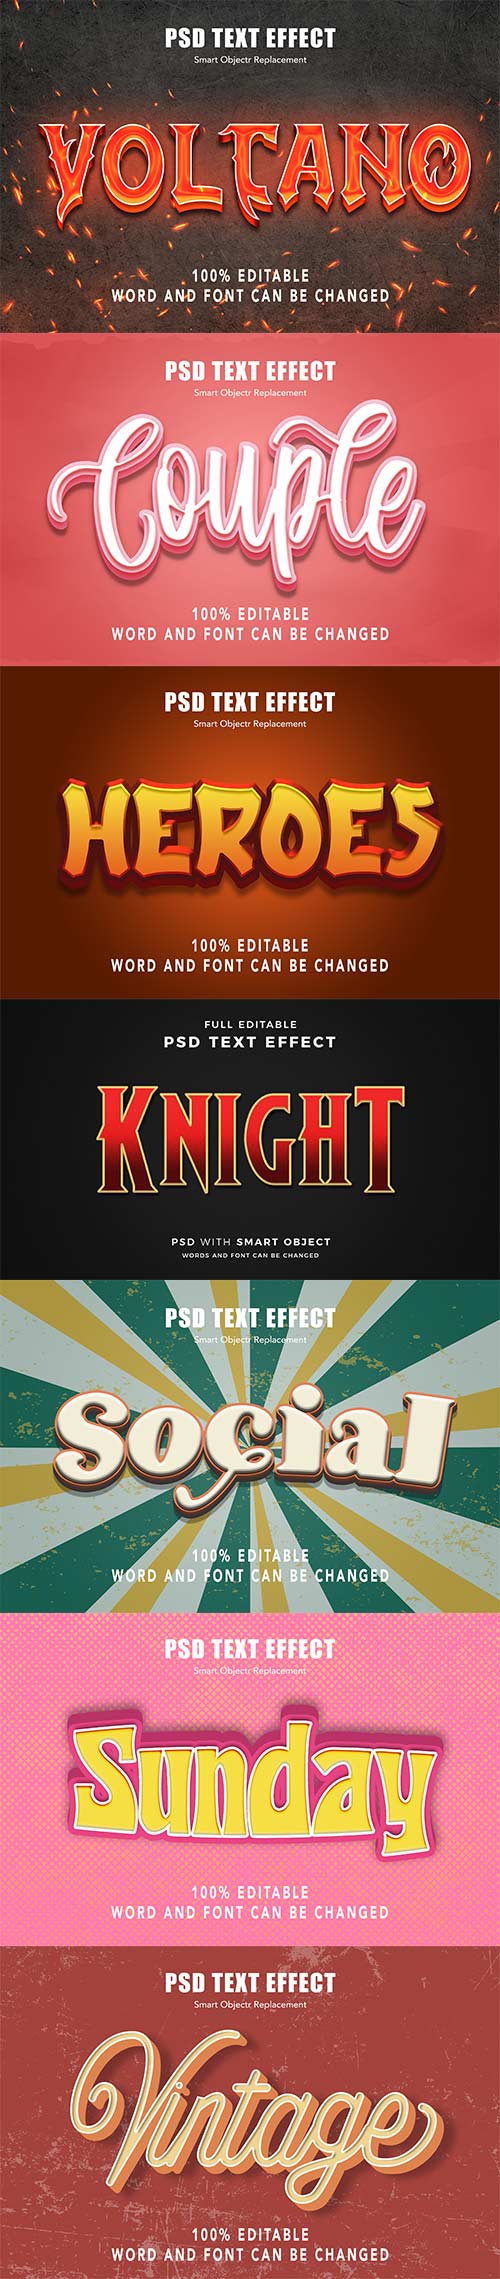 Psd text effect set vol 39